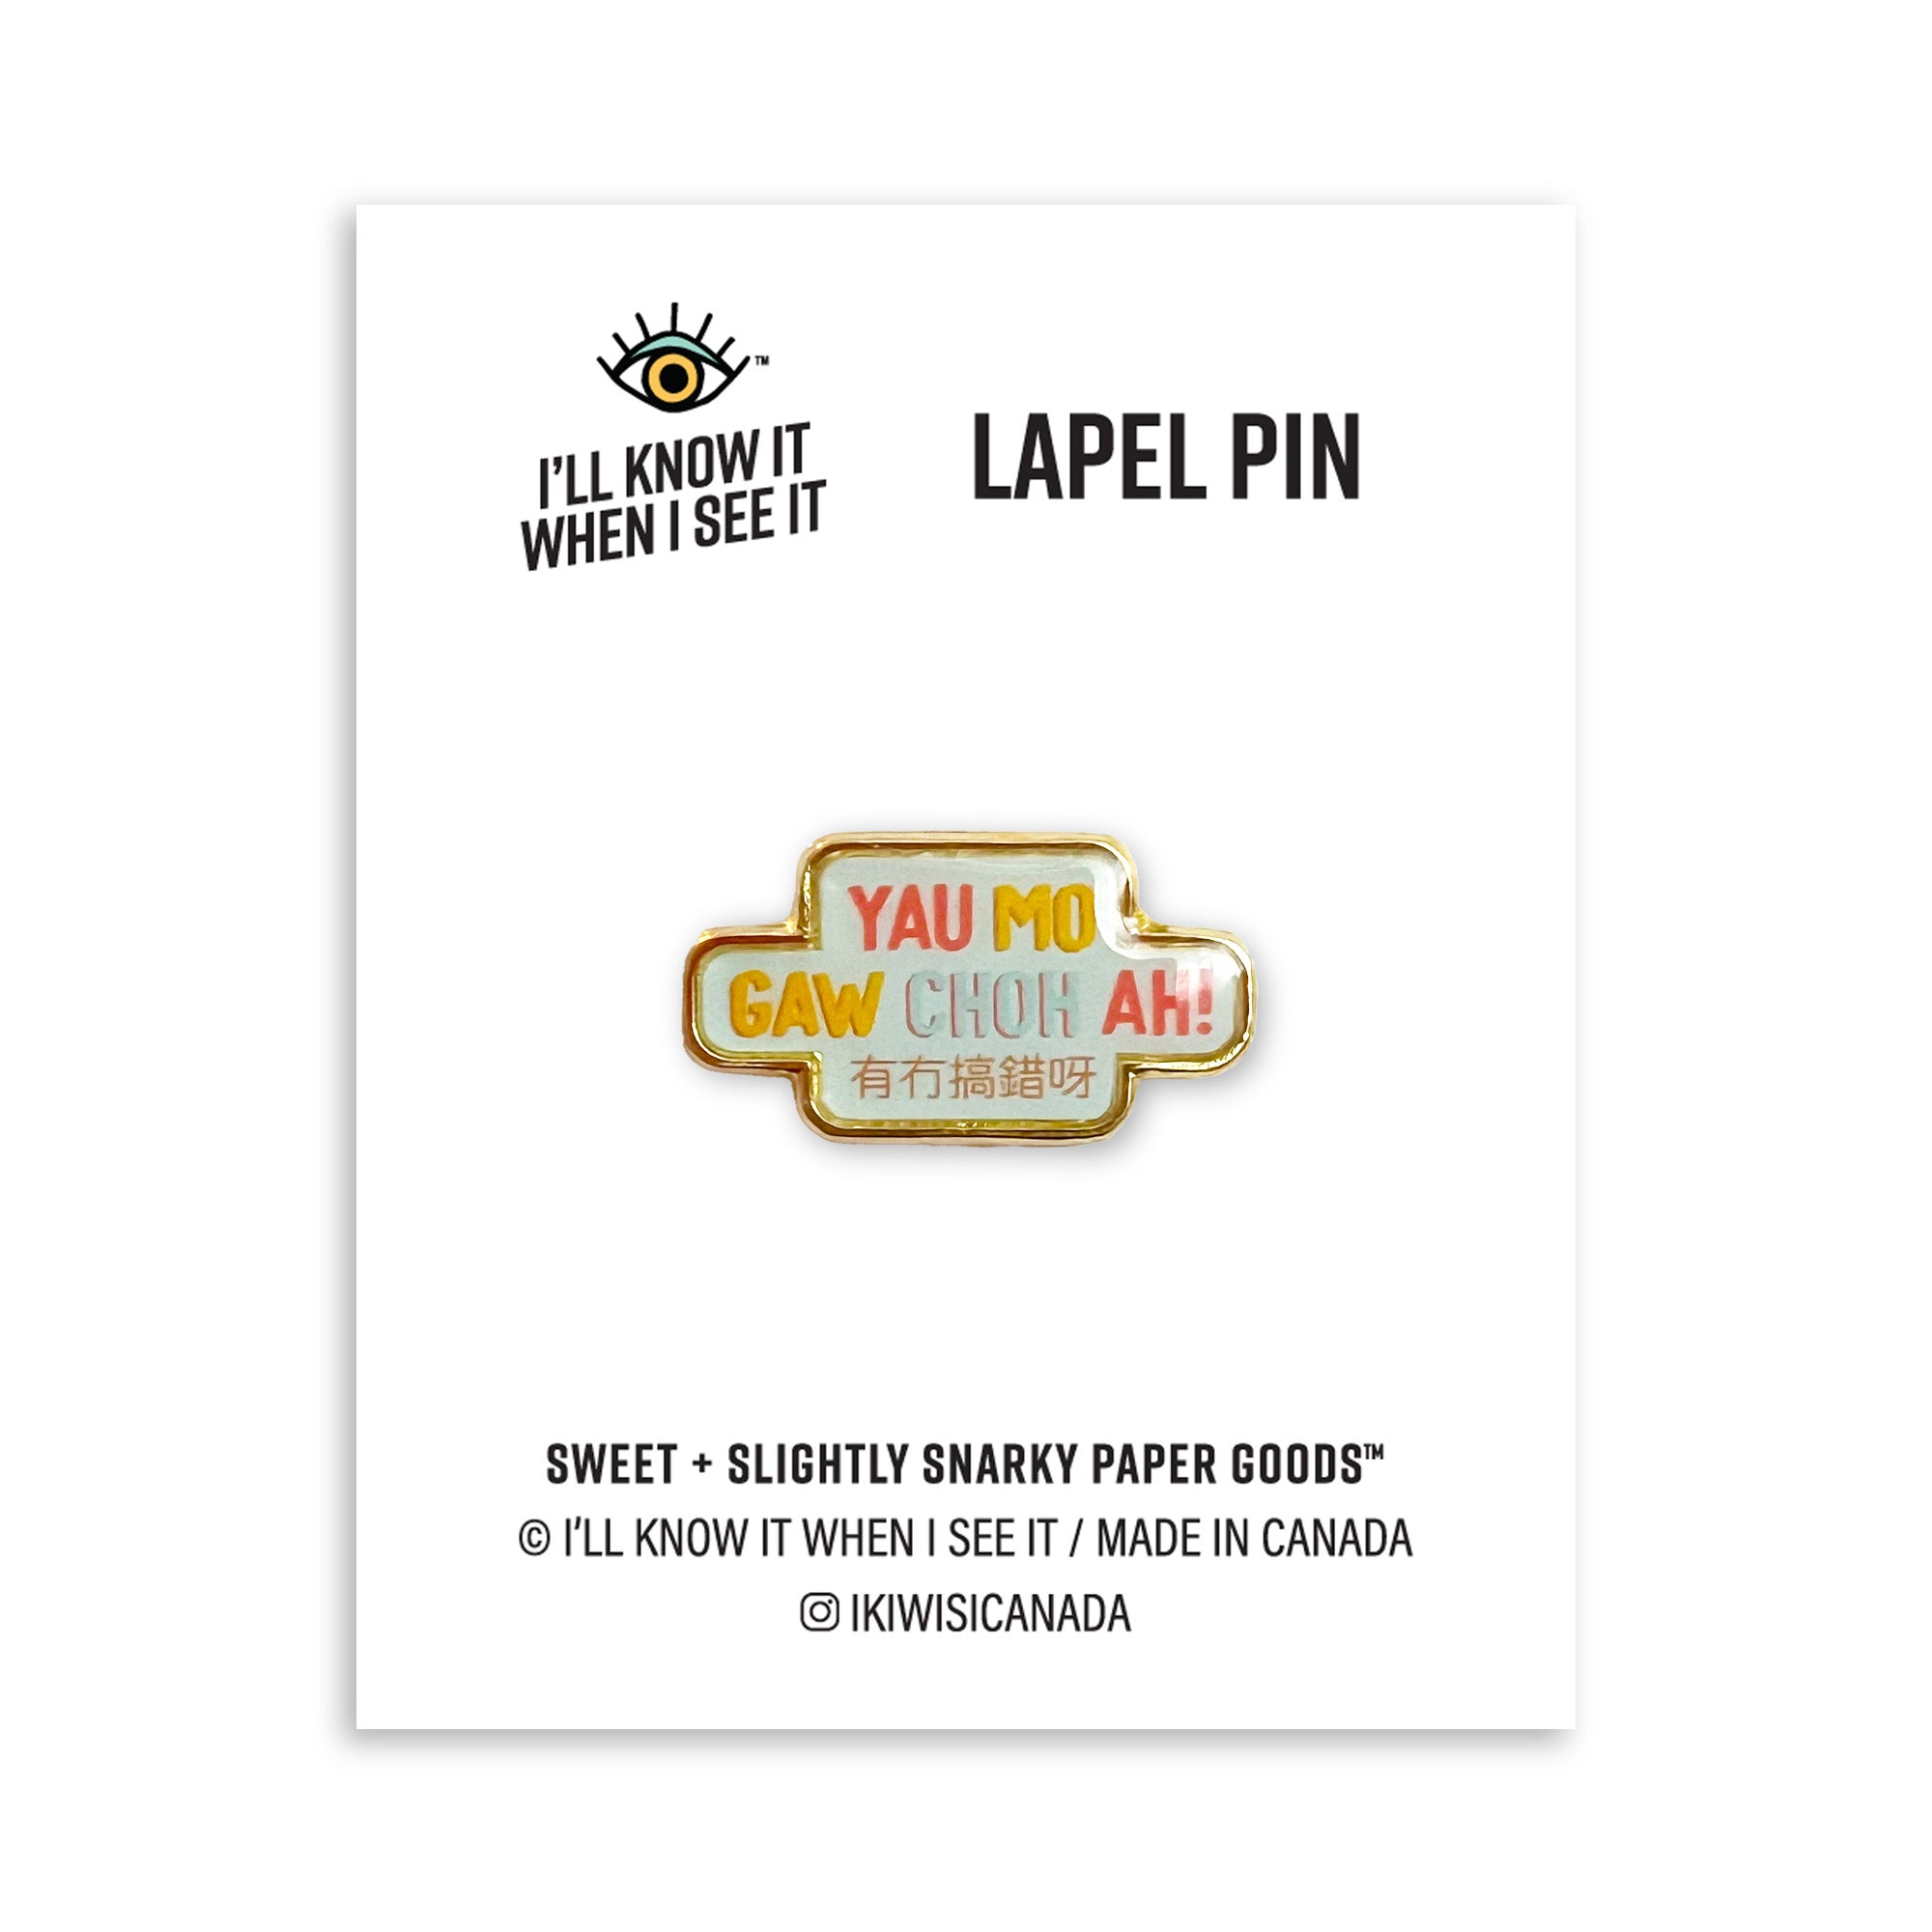 Yau mo gaw choh ah (有冇搞錯呀) lapel pin by I&